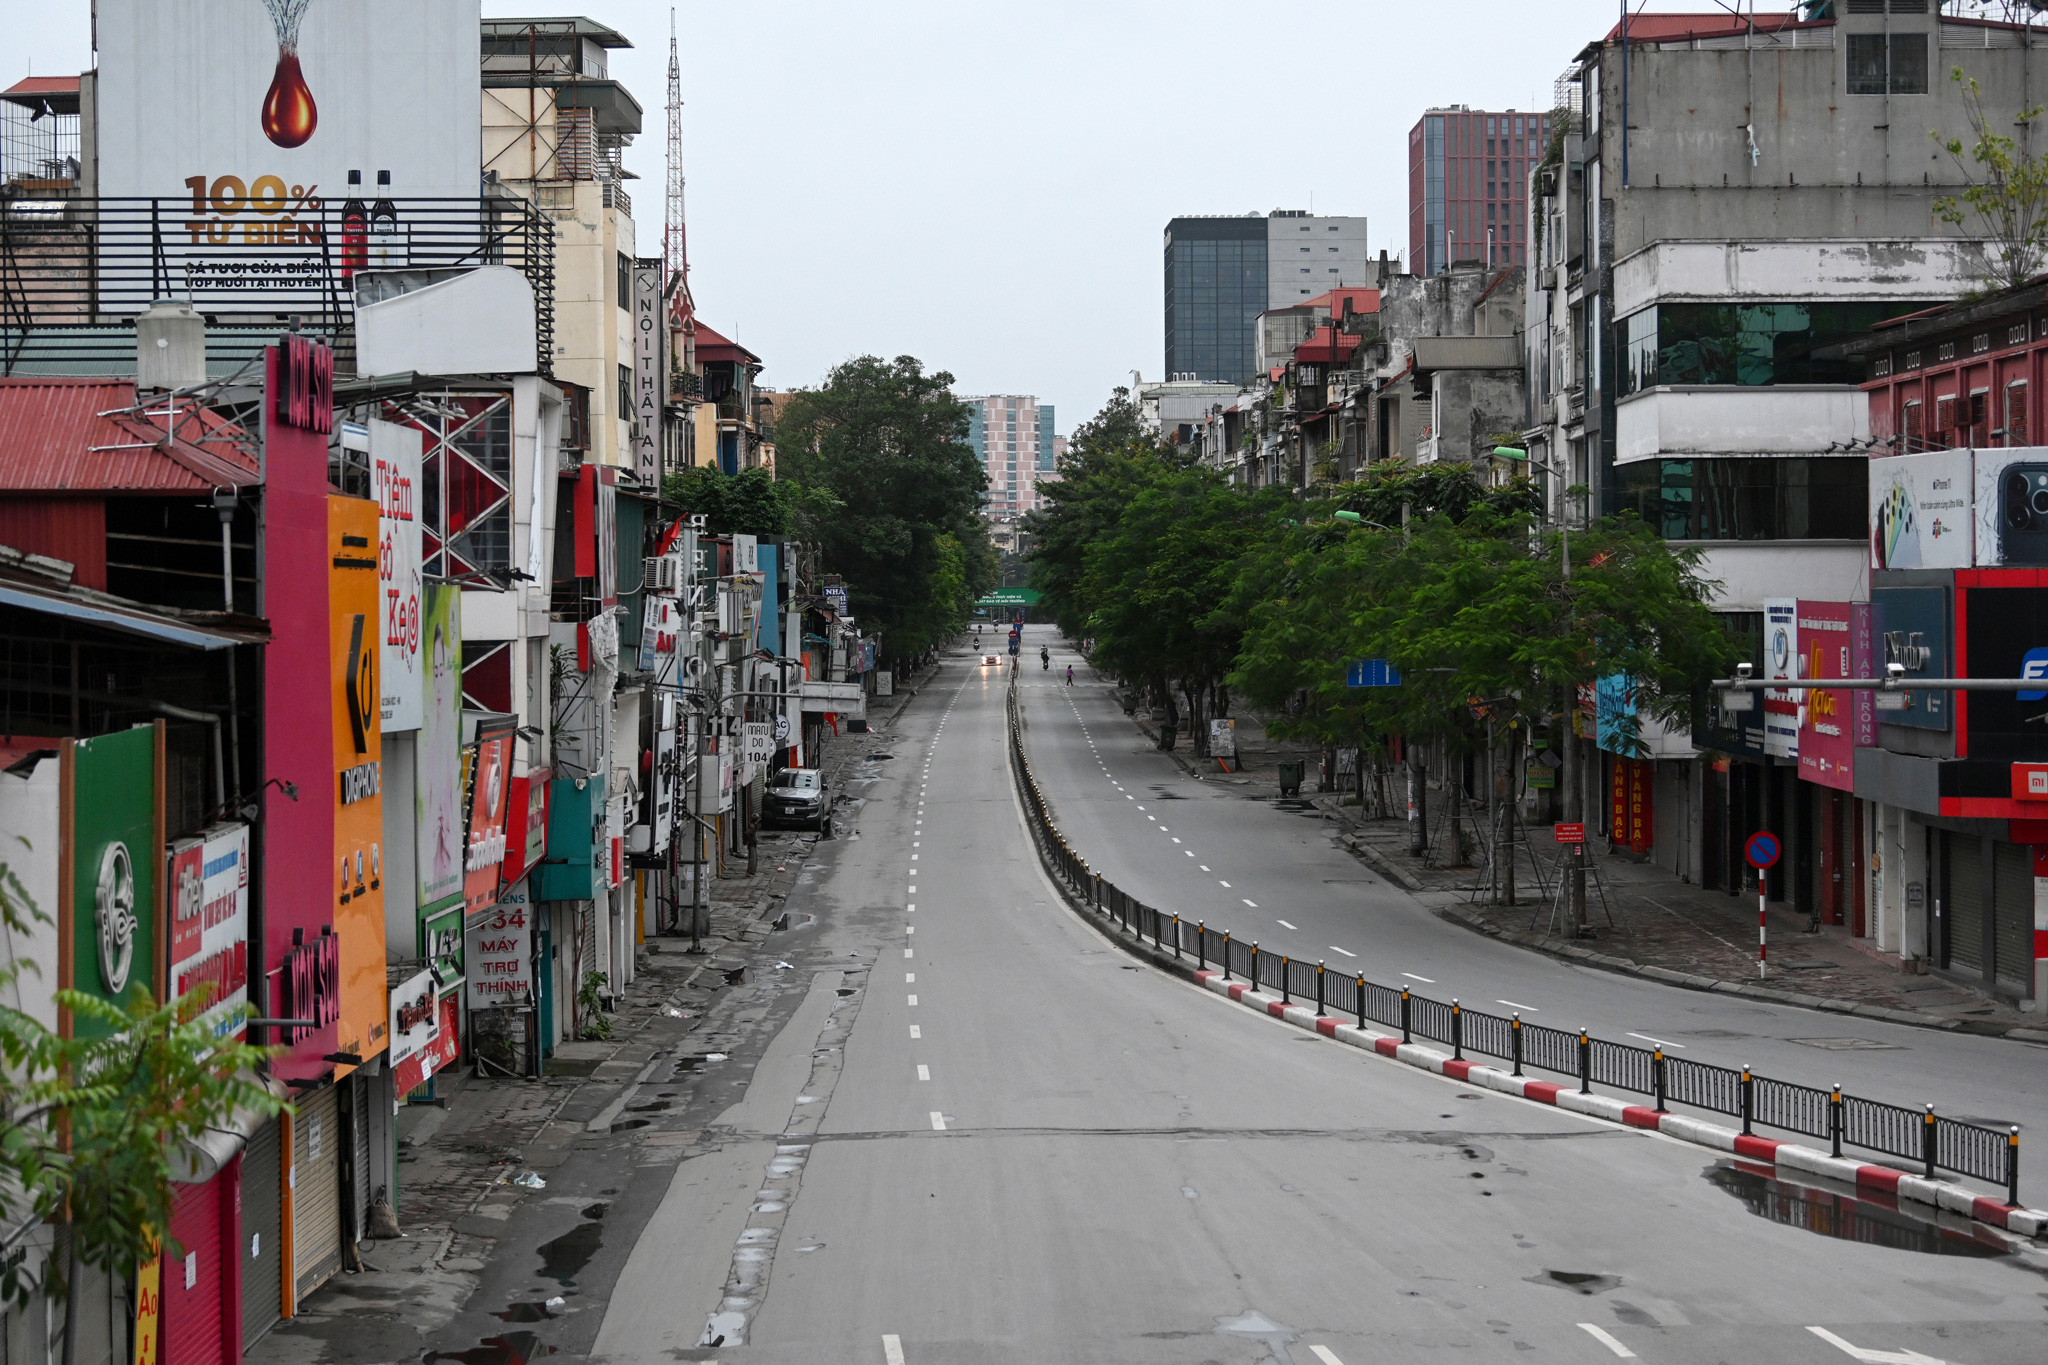 Đường phố Hà Nội vào ngày thứ 5 rất vắng lặng và yên tĩnh. Hãy xem ảnh để cảm nhận vẻ đẹp của Hà Nội vào ngày thường ngày, không đông đúc nhưng vẫn tươi đẹp như hoa.